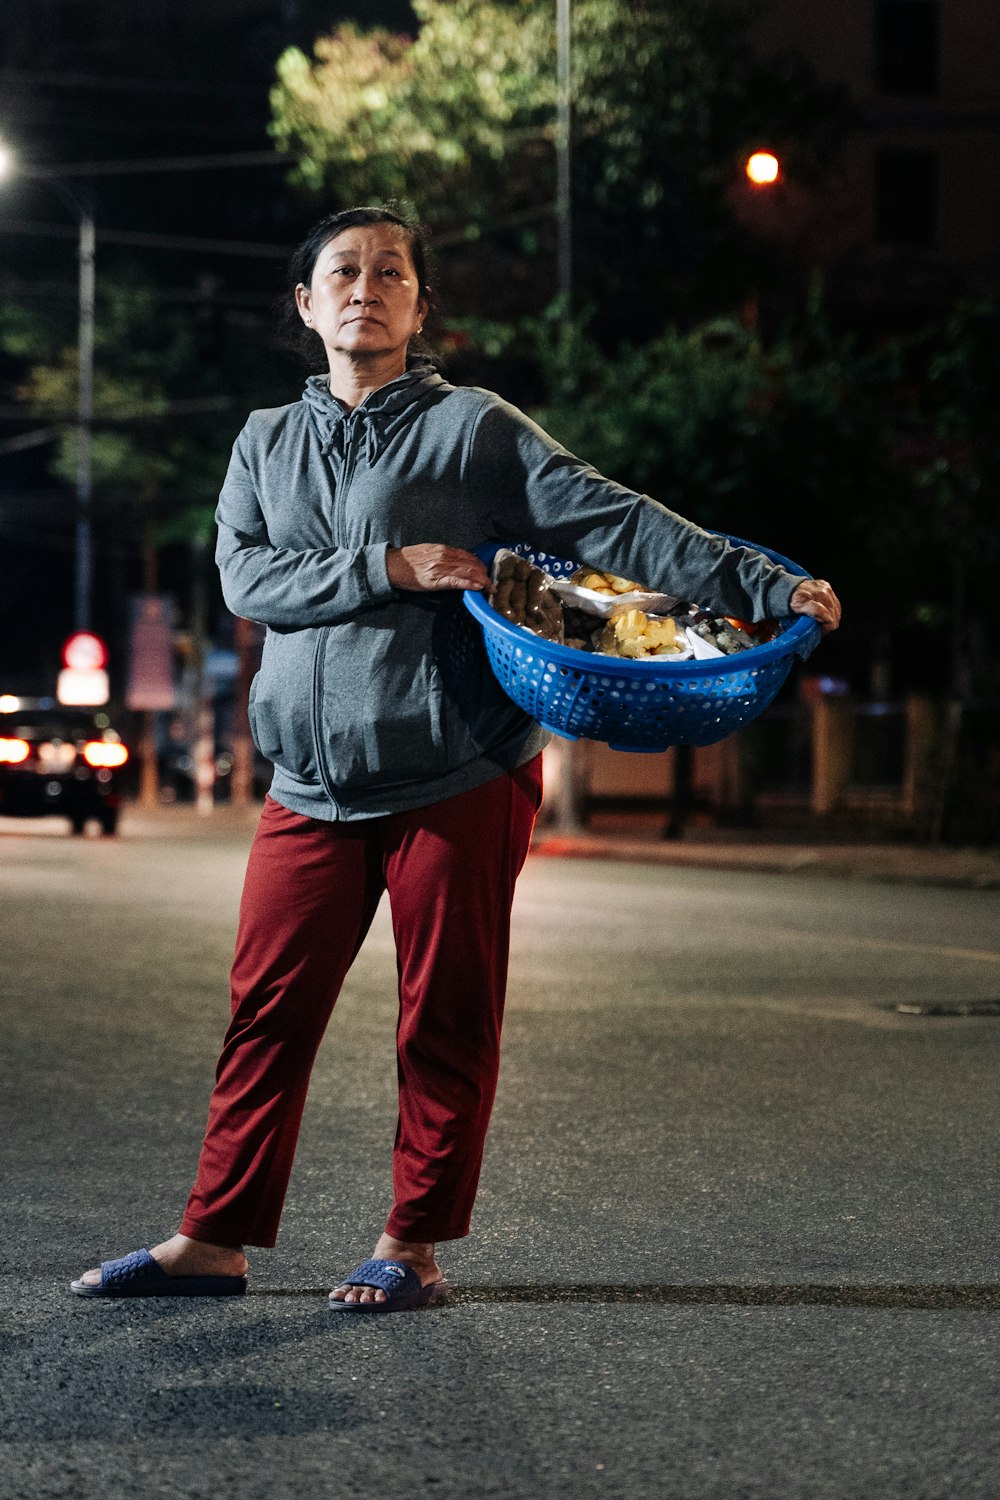 Ein Mann steht mitten auf der Straße und hält einen Korb mit Lebensmitteln in der Hand